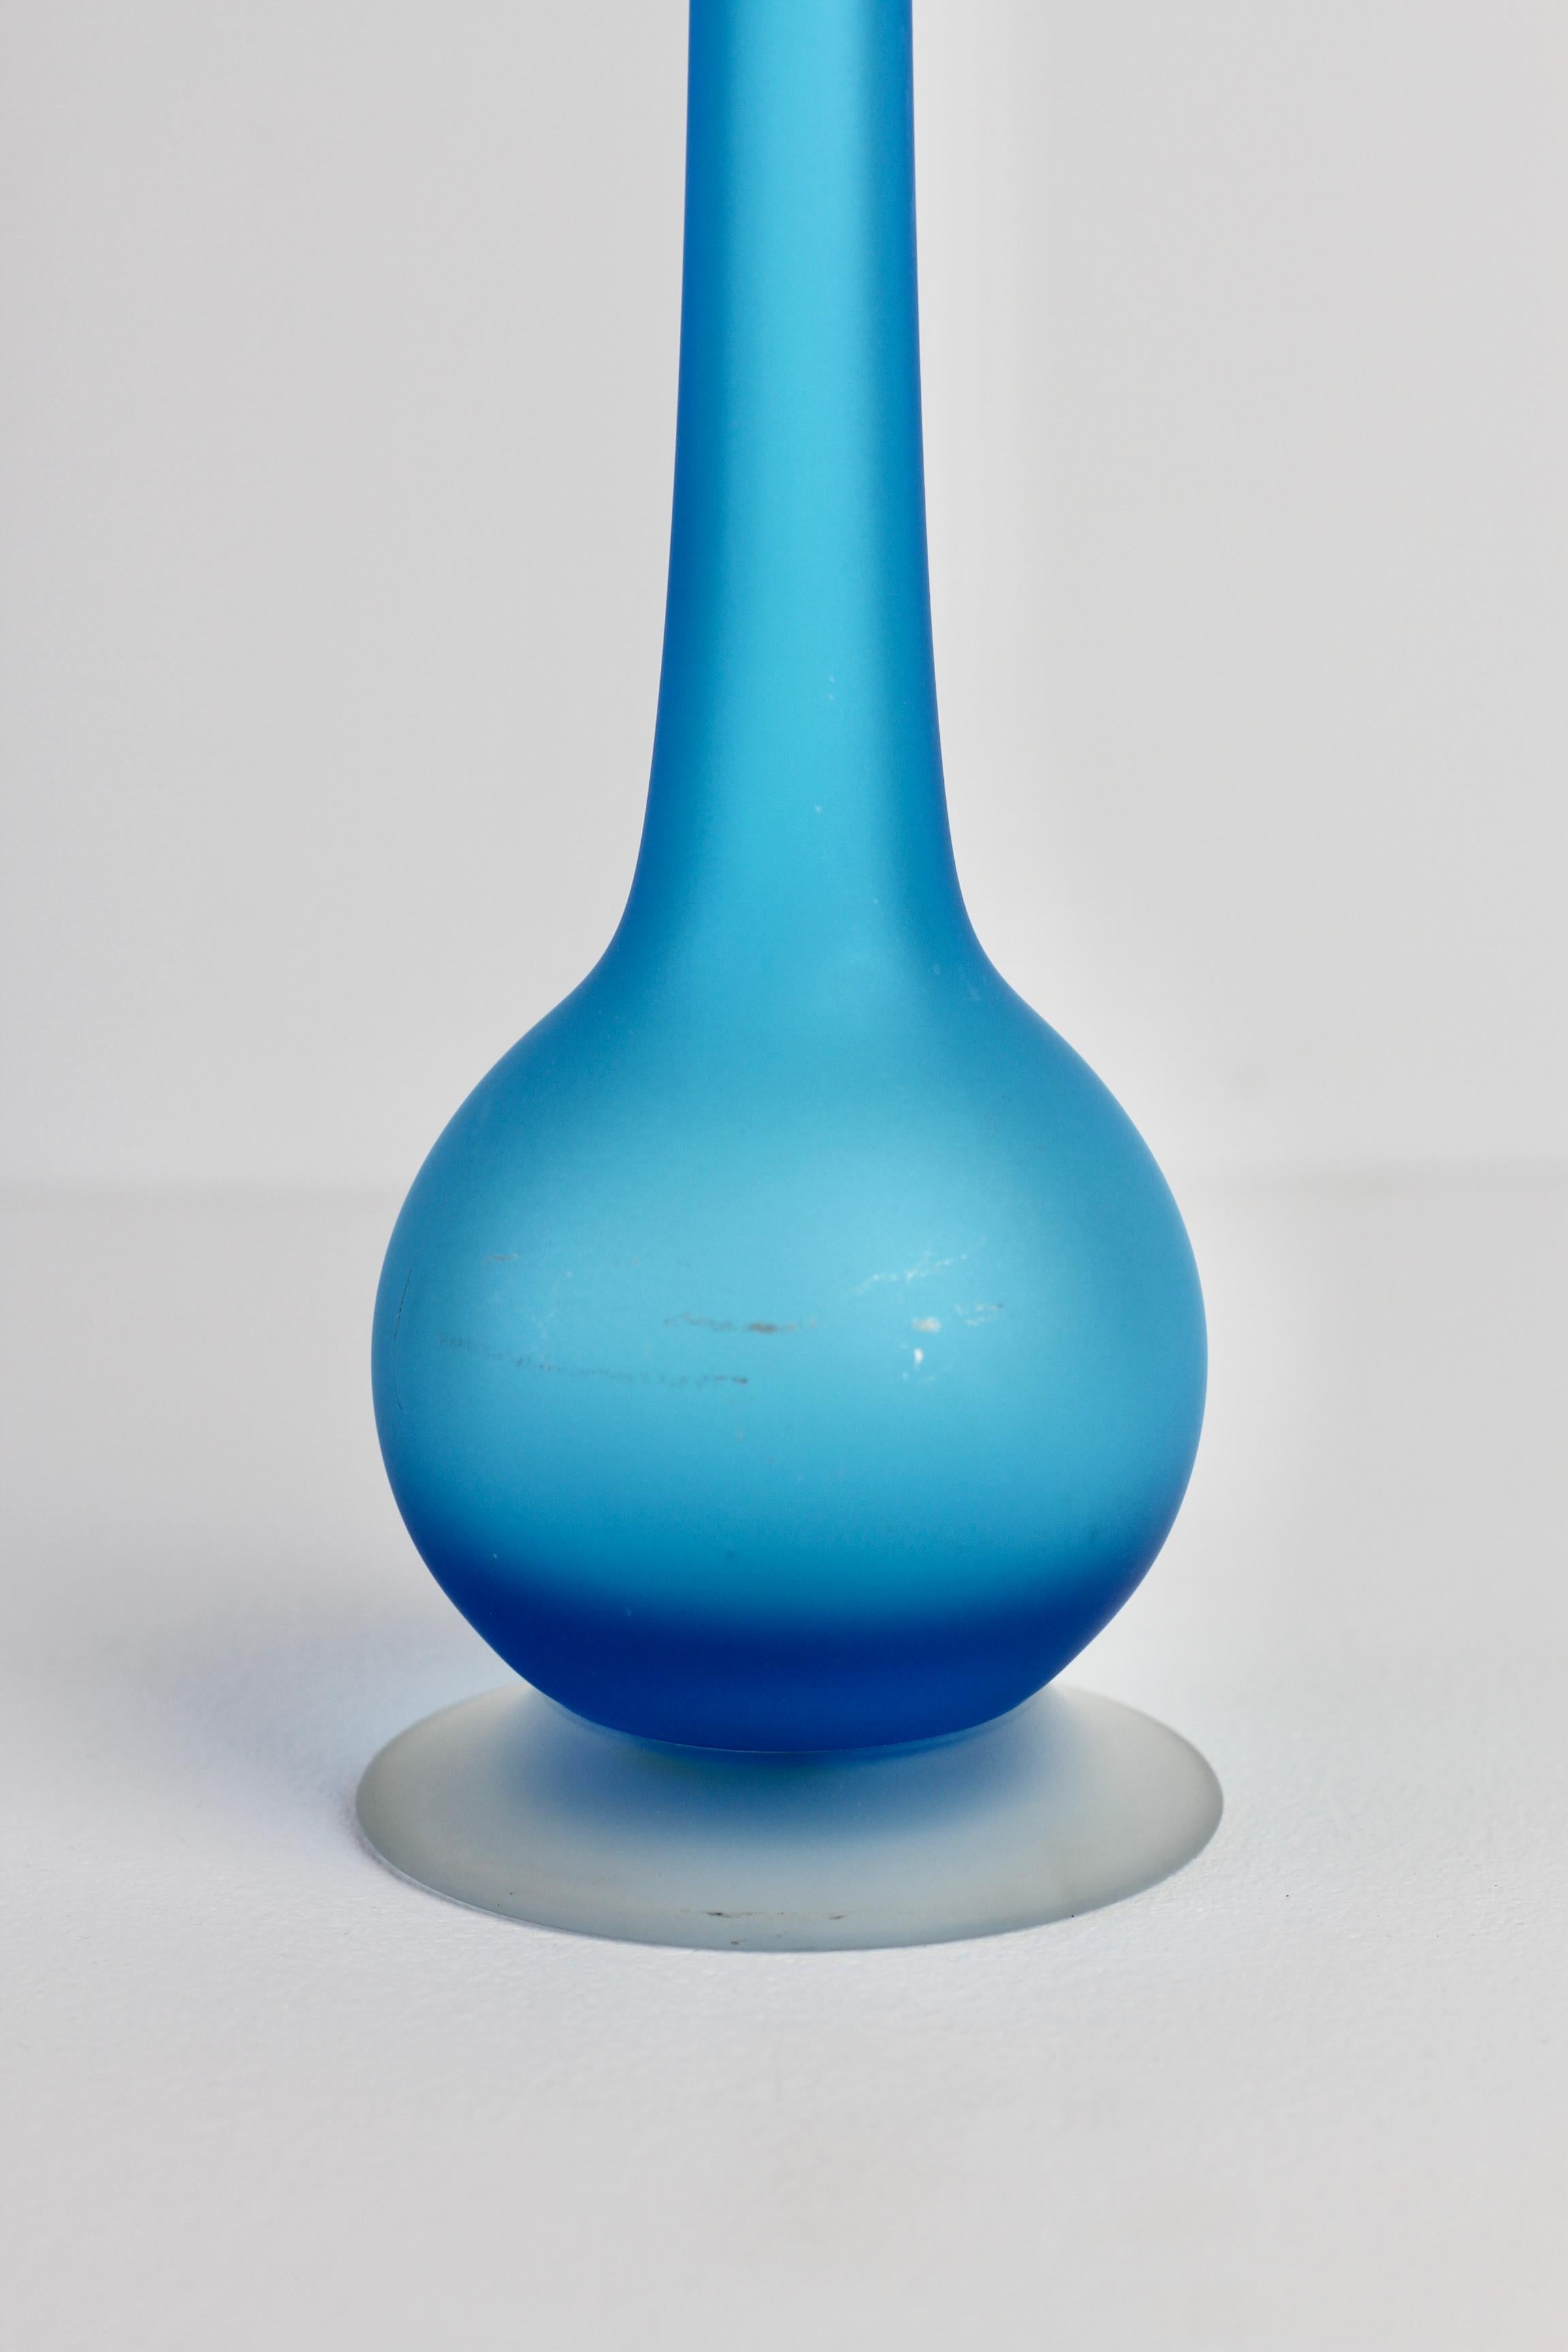 Rare Colorful Blue Carlo Moretti Satinato Murano Glass Pencil Vase For Sale 2